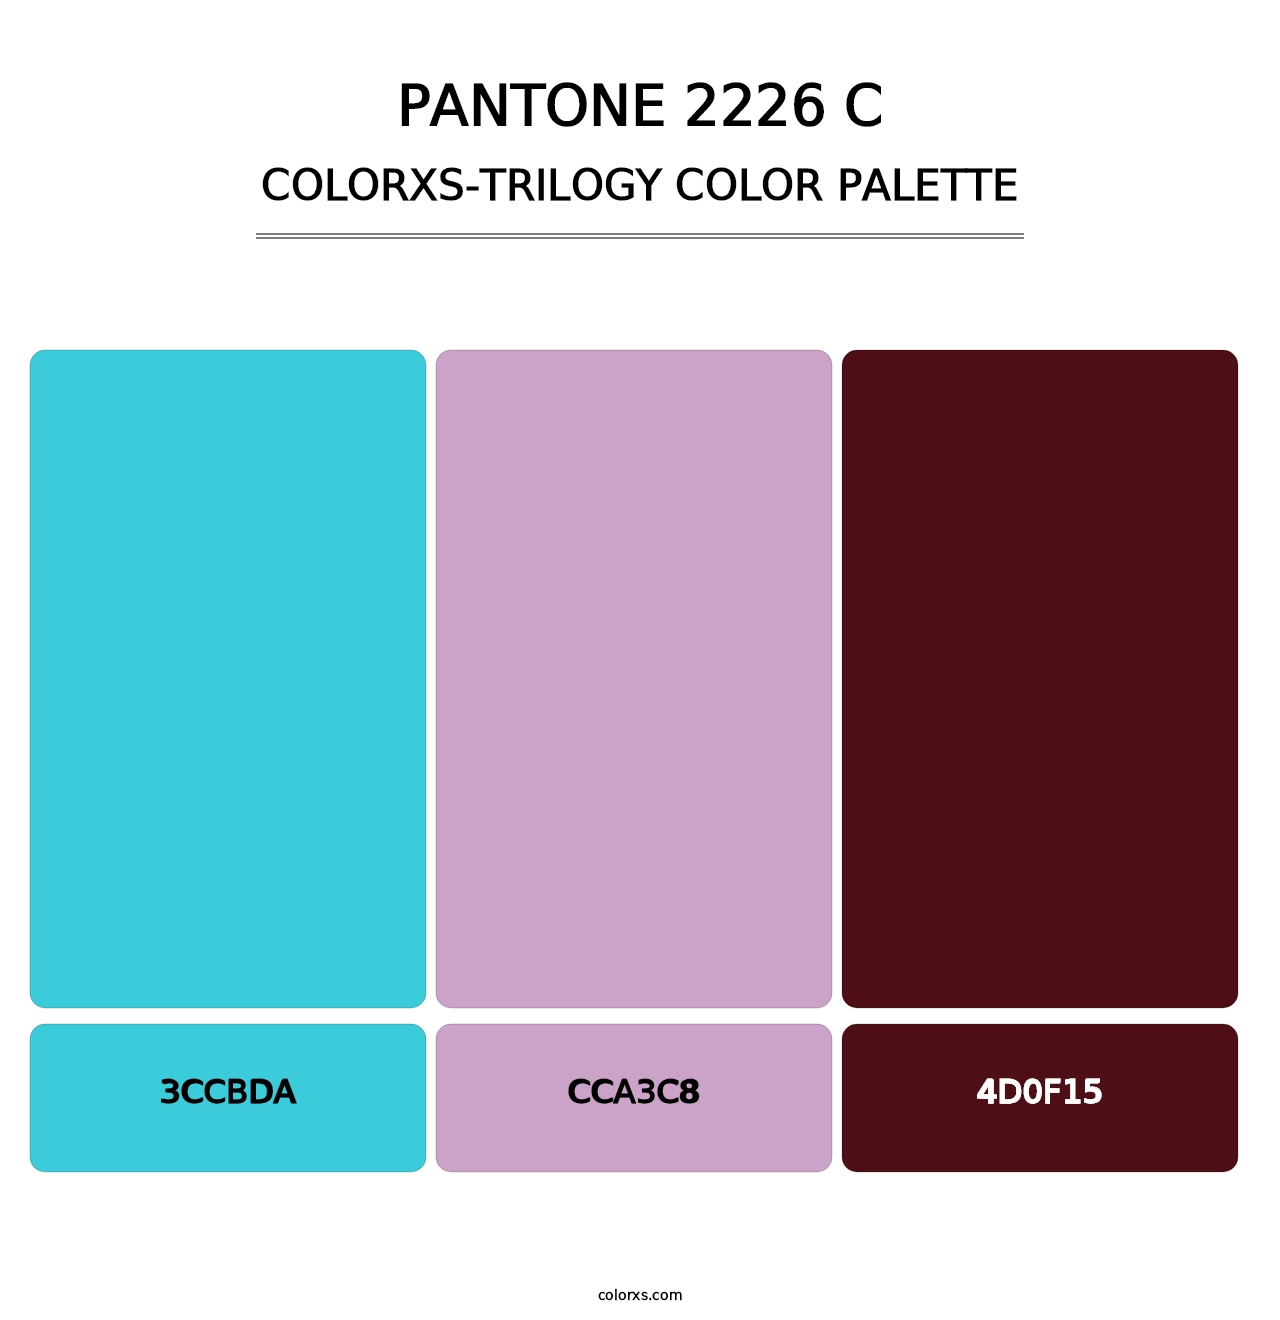 PANTONE 2226 C - Colorxs Trilogy Palette